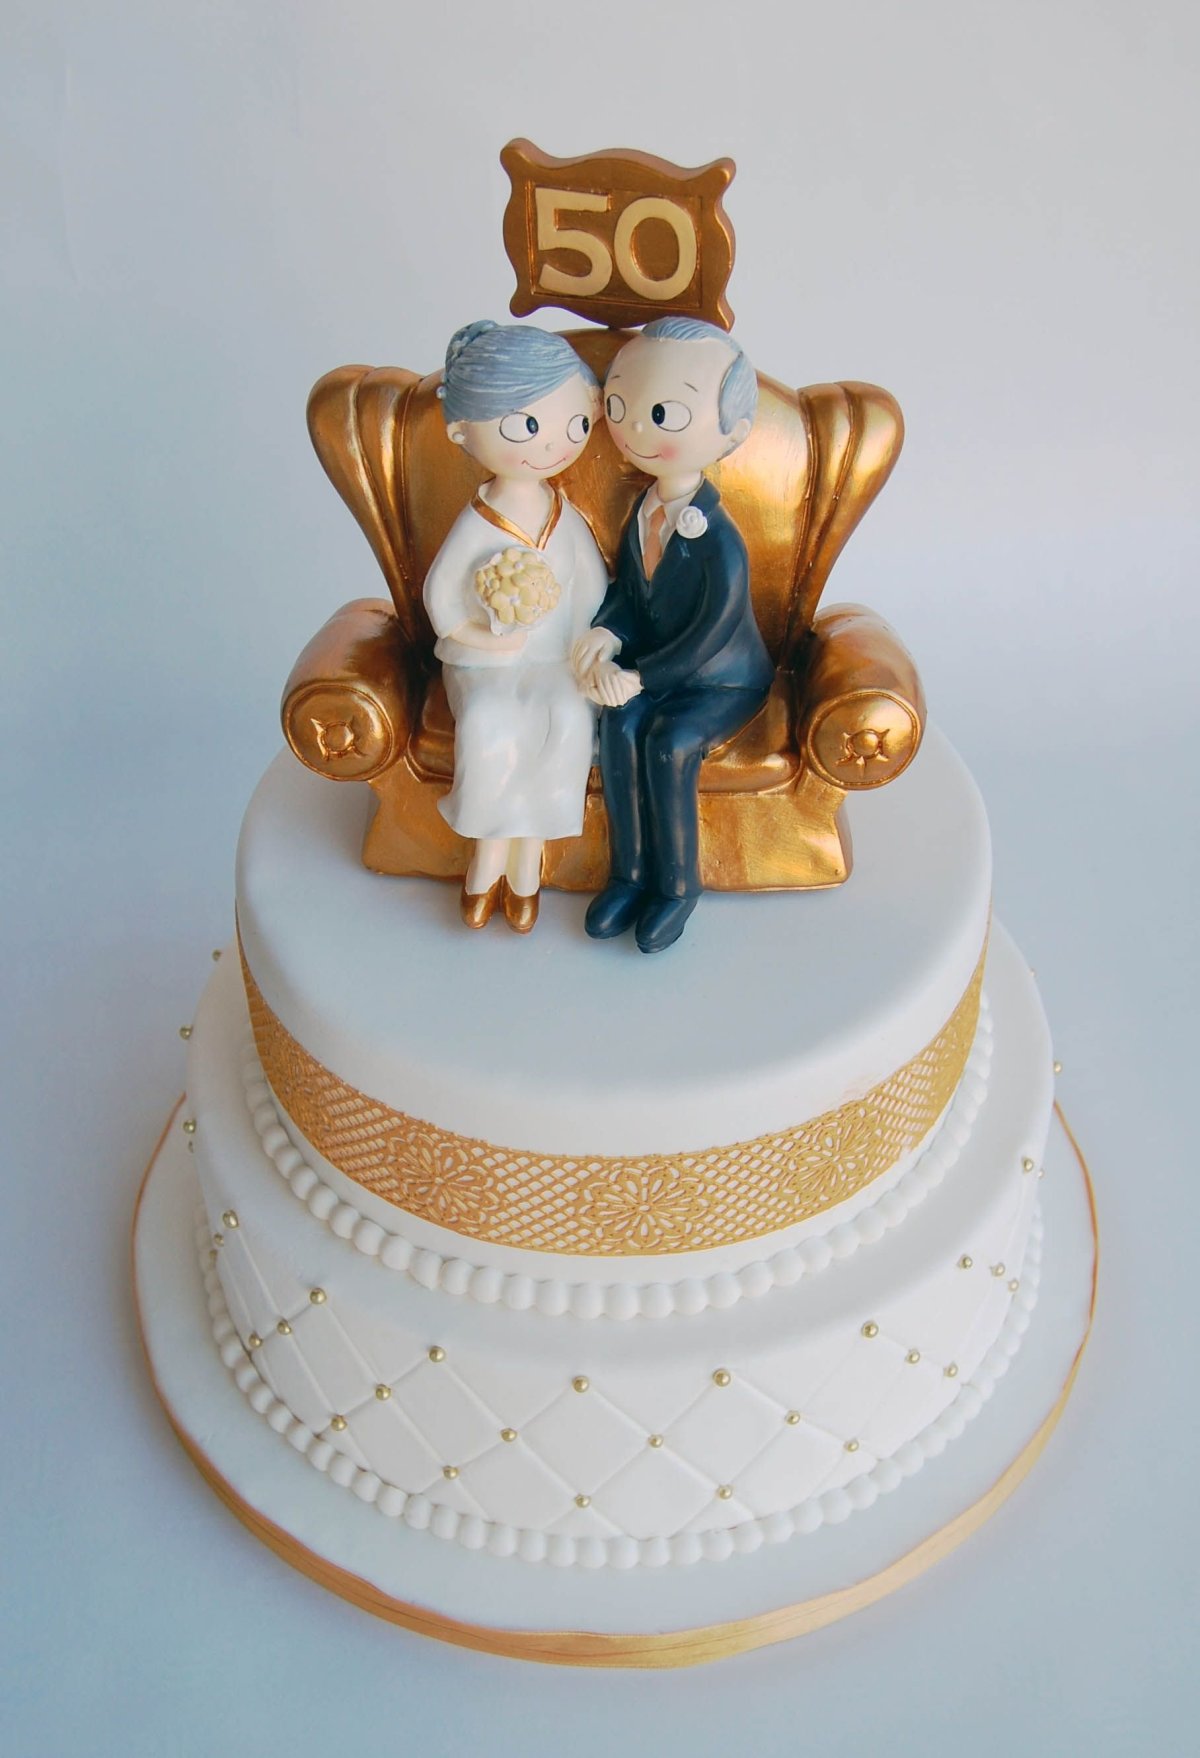 Оригинальный торт на золотую свадьбу